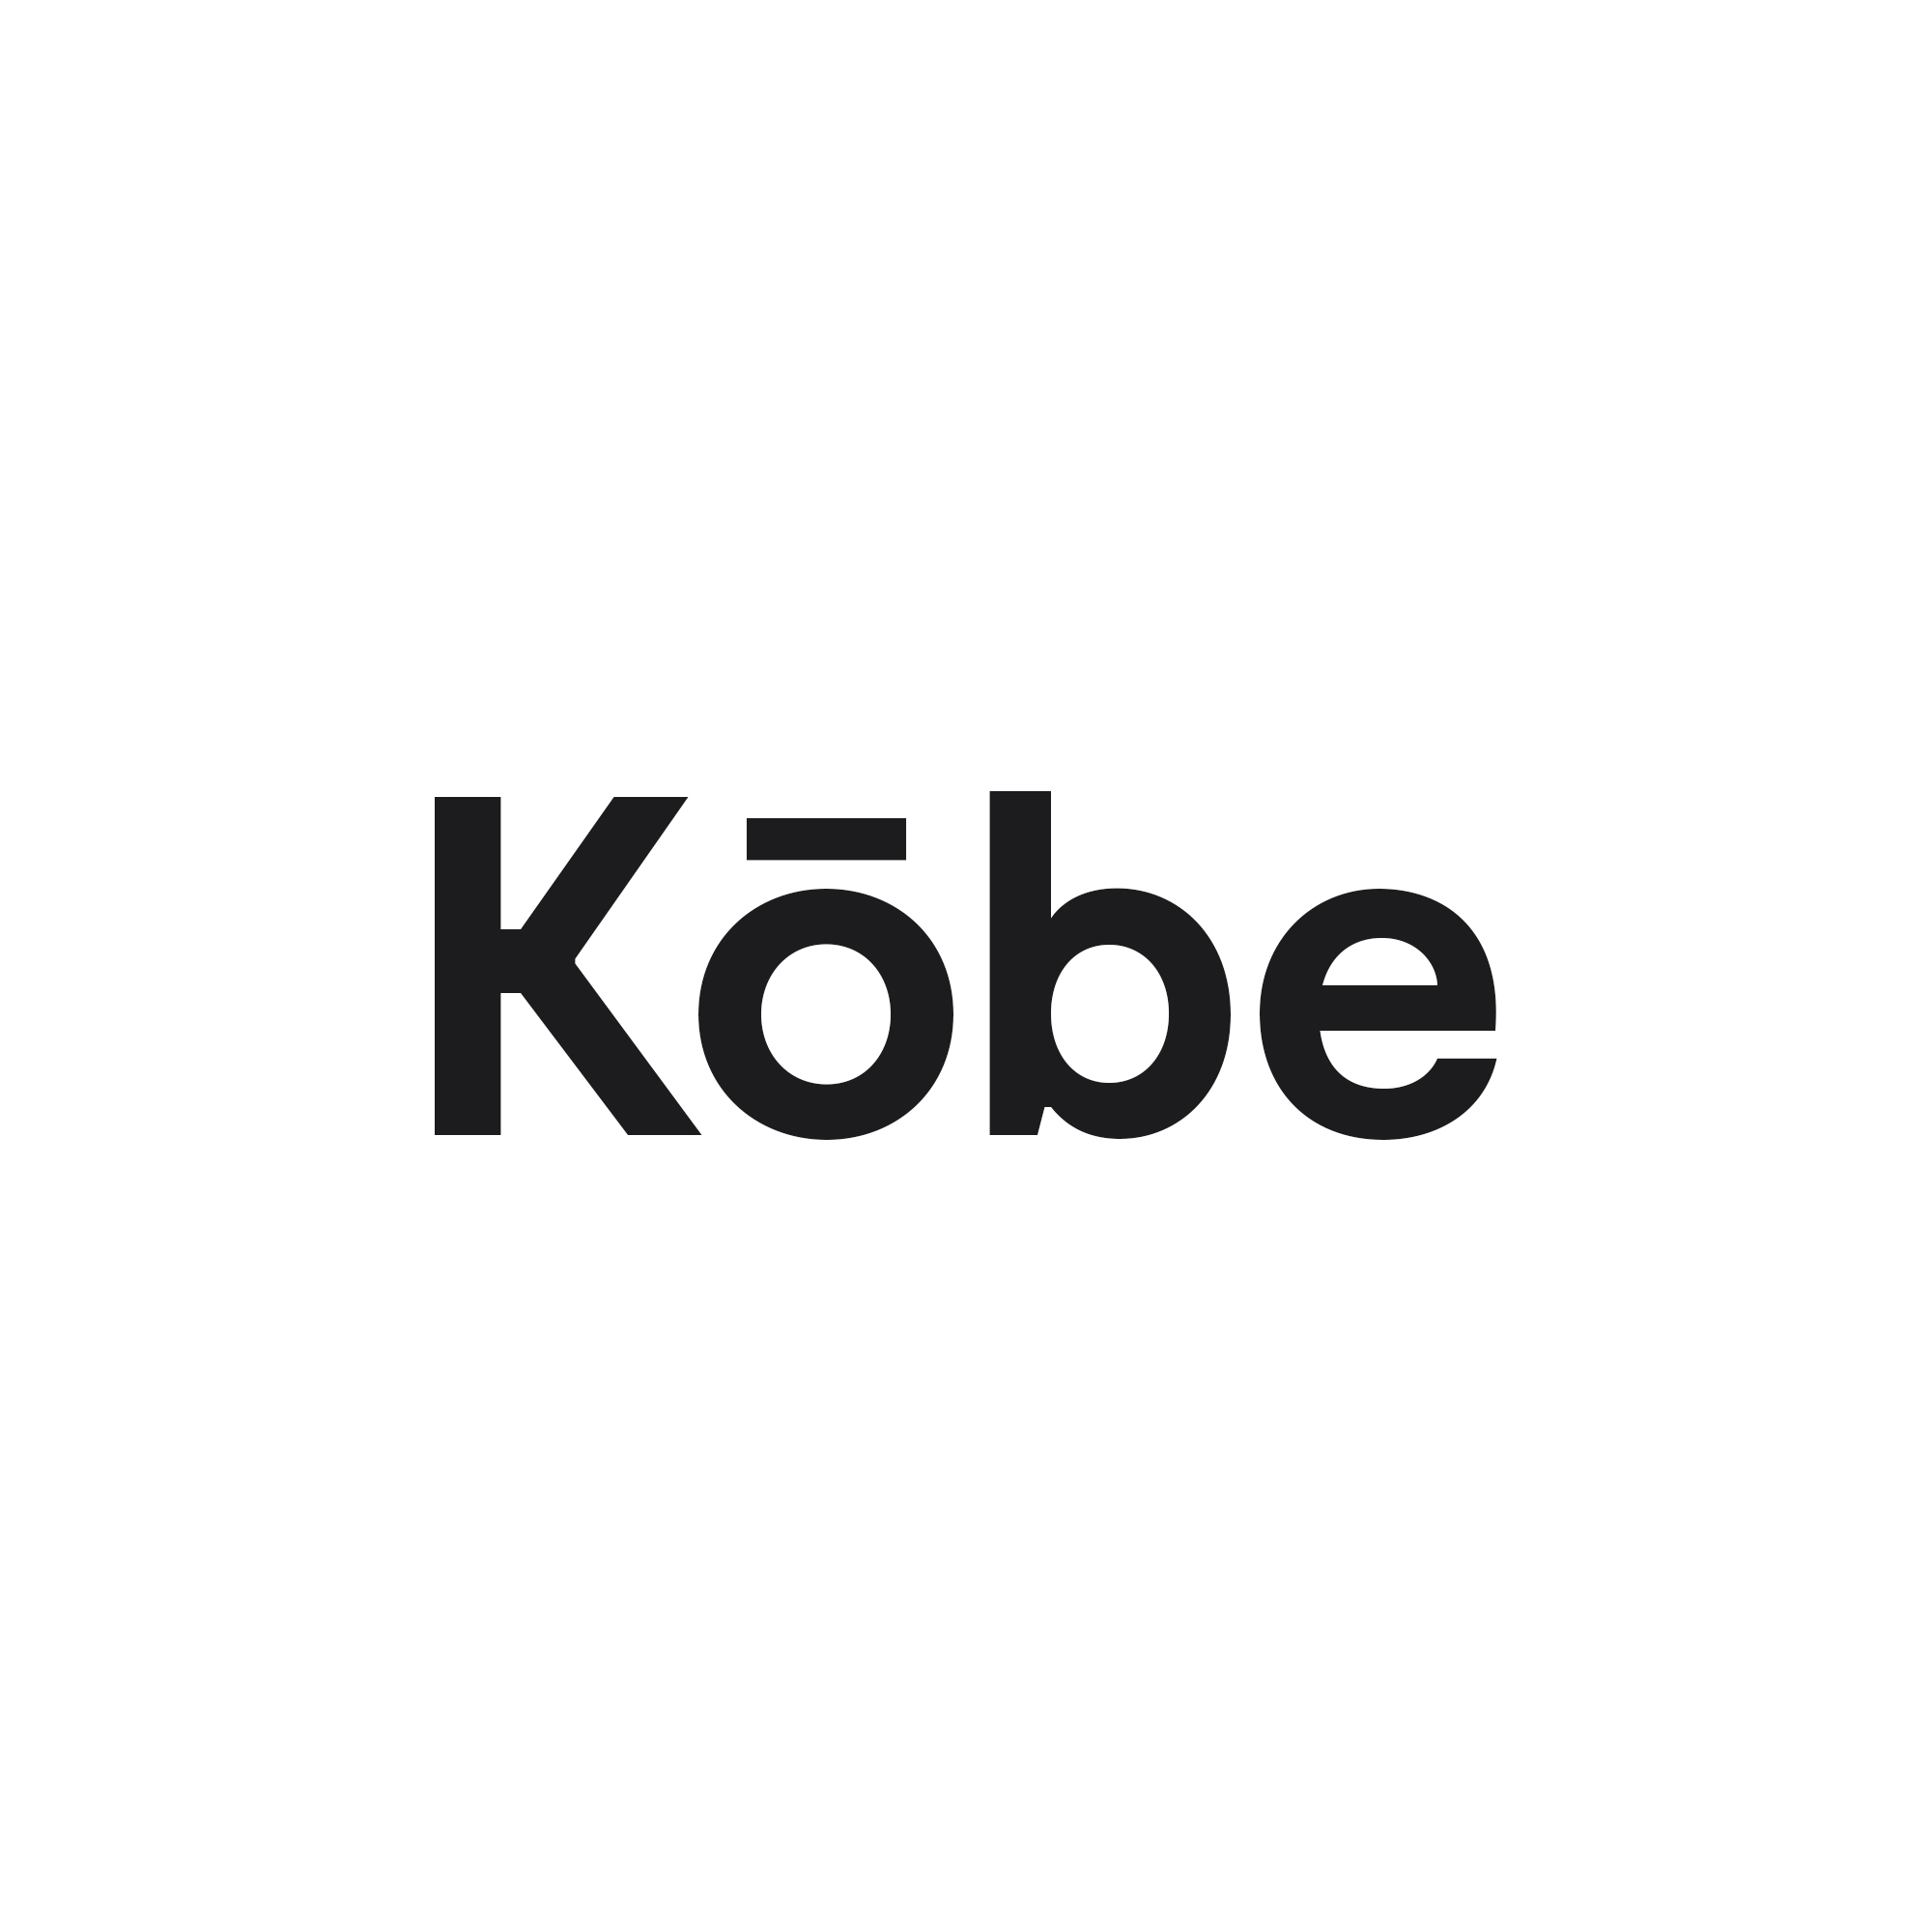 logo-kobe-1.jpg